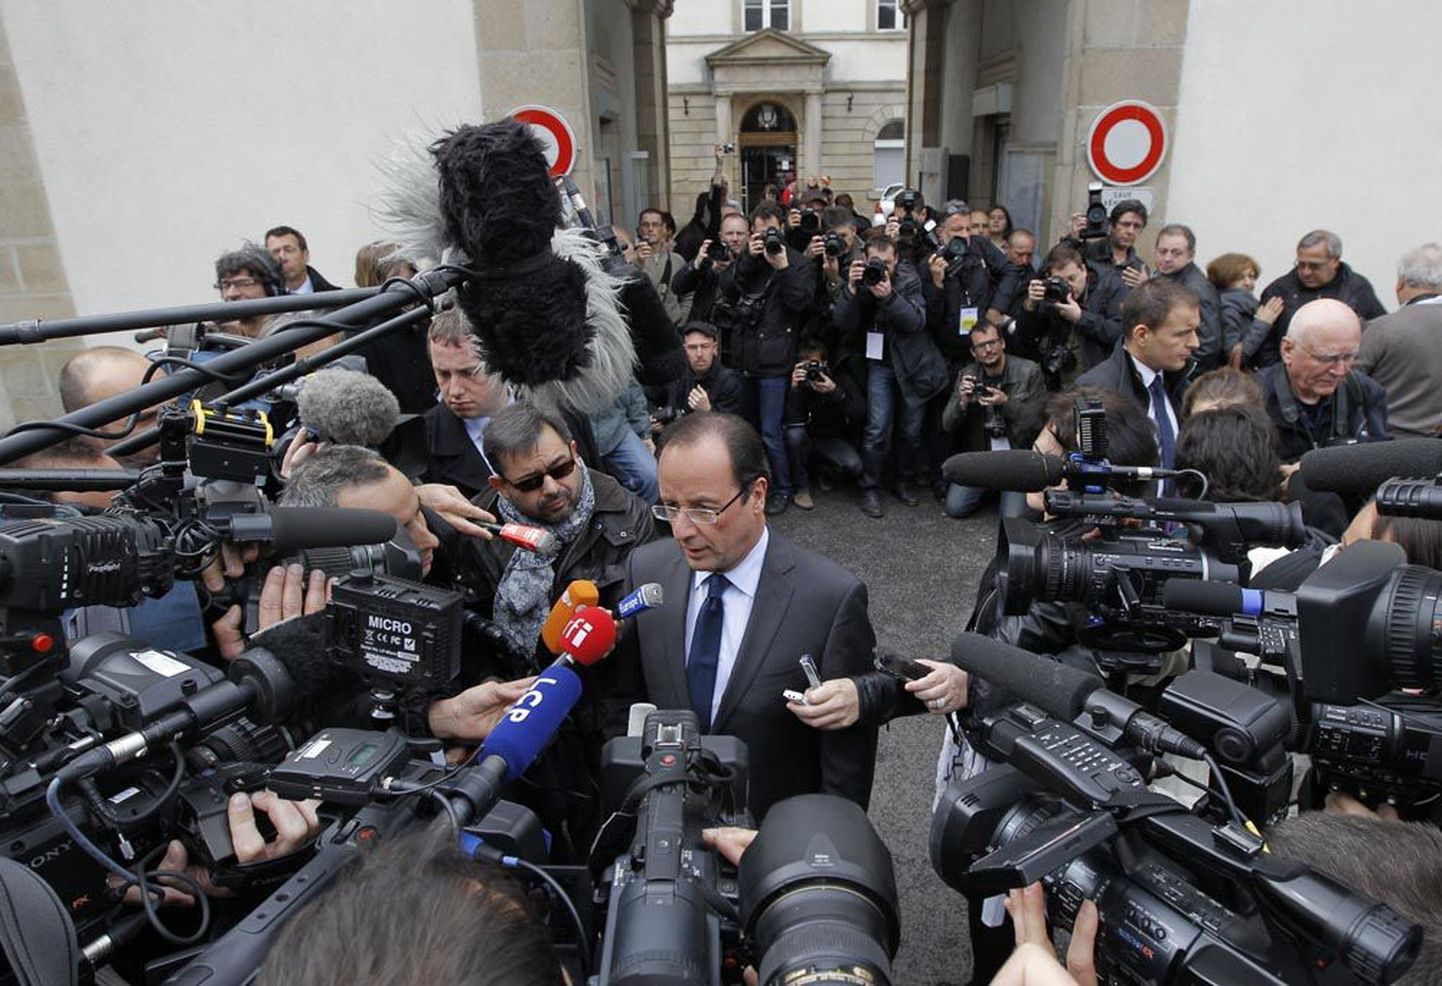 Ajakirjanikud eile Tulle’i linnas François Hollande’i ümber. Sarkozy toetajad on       eraviisiliselt tunnistanud, et presidendil on nüüd sama hästi kui võimatu teises voorus Hollande’ist mööda minna.